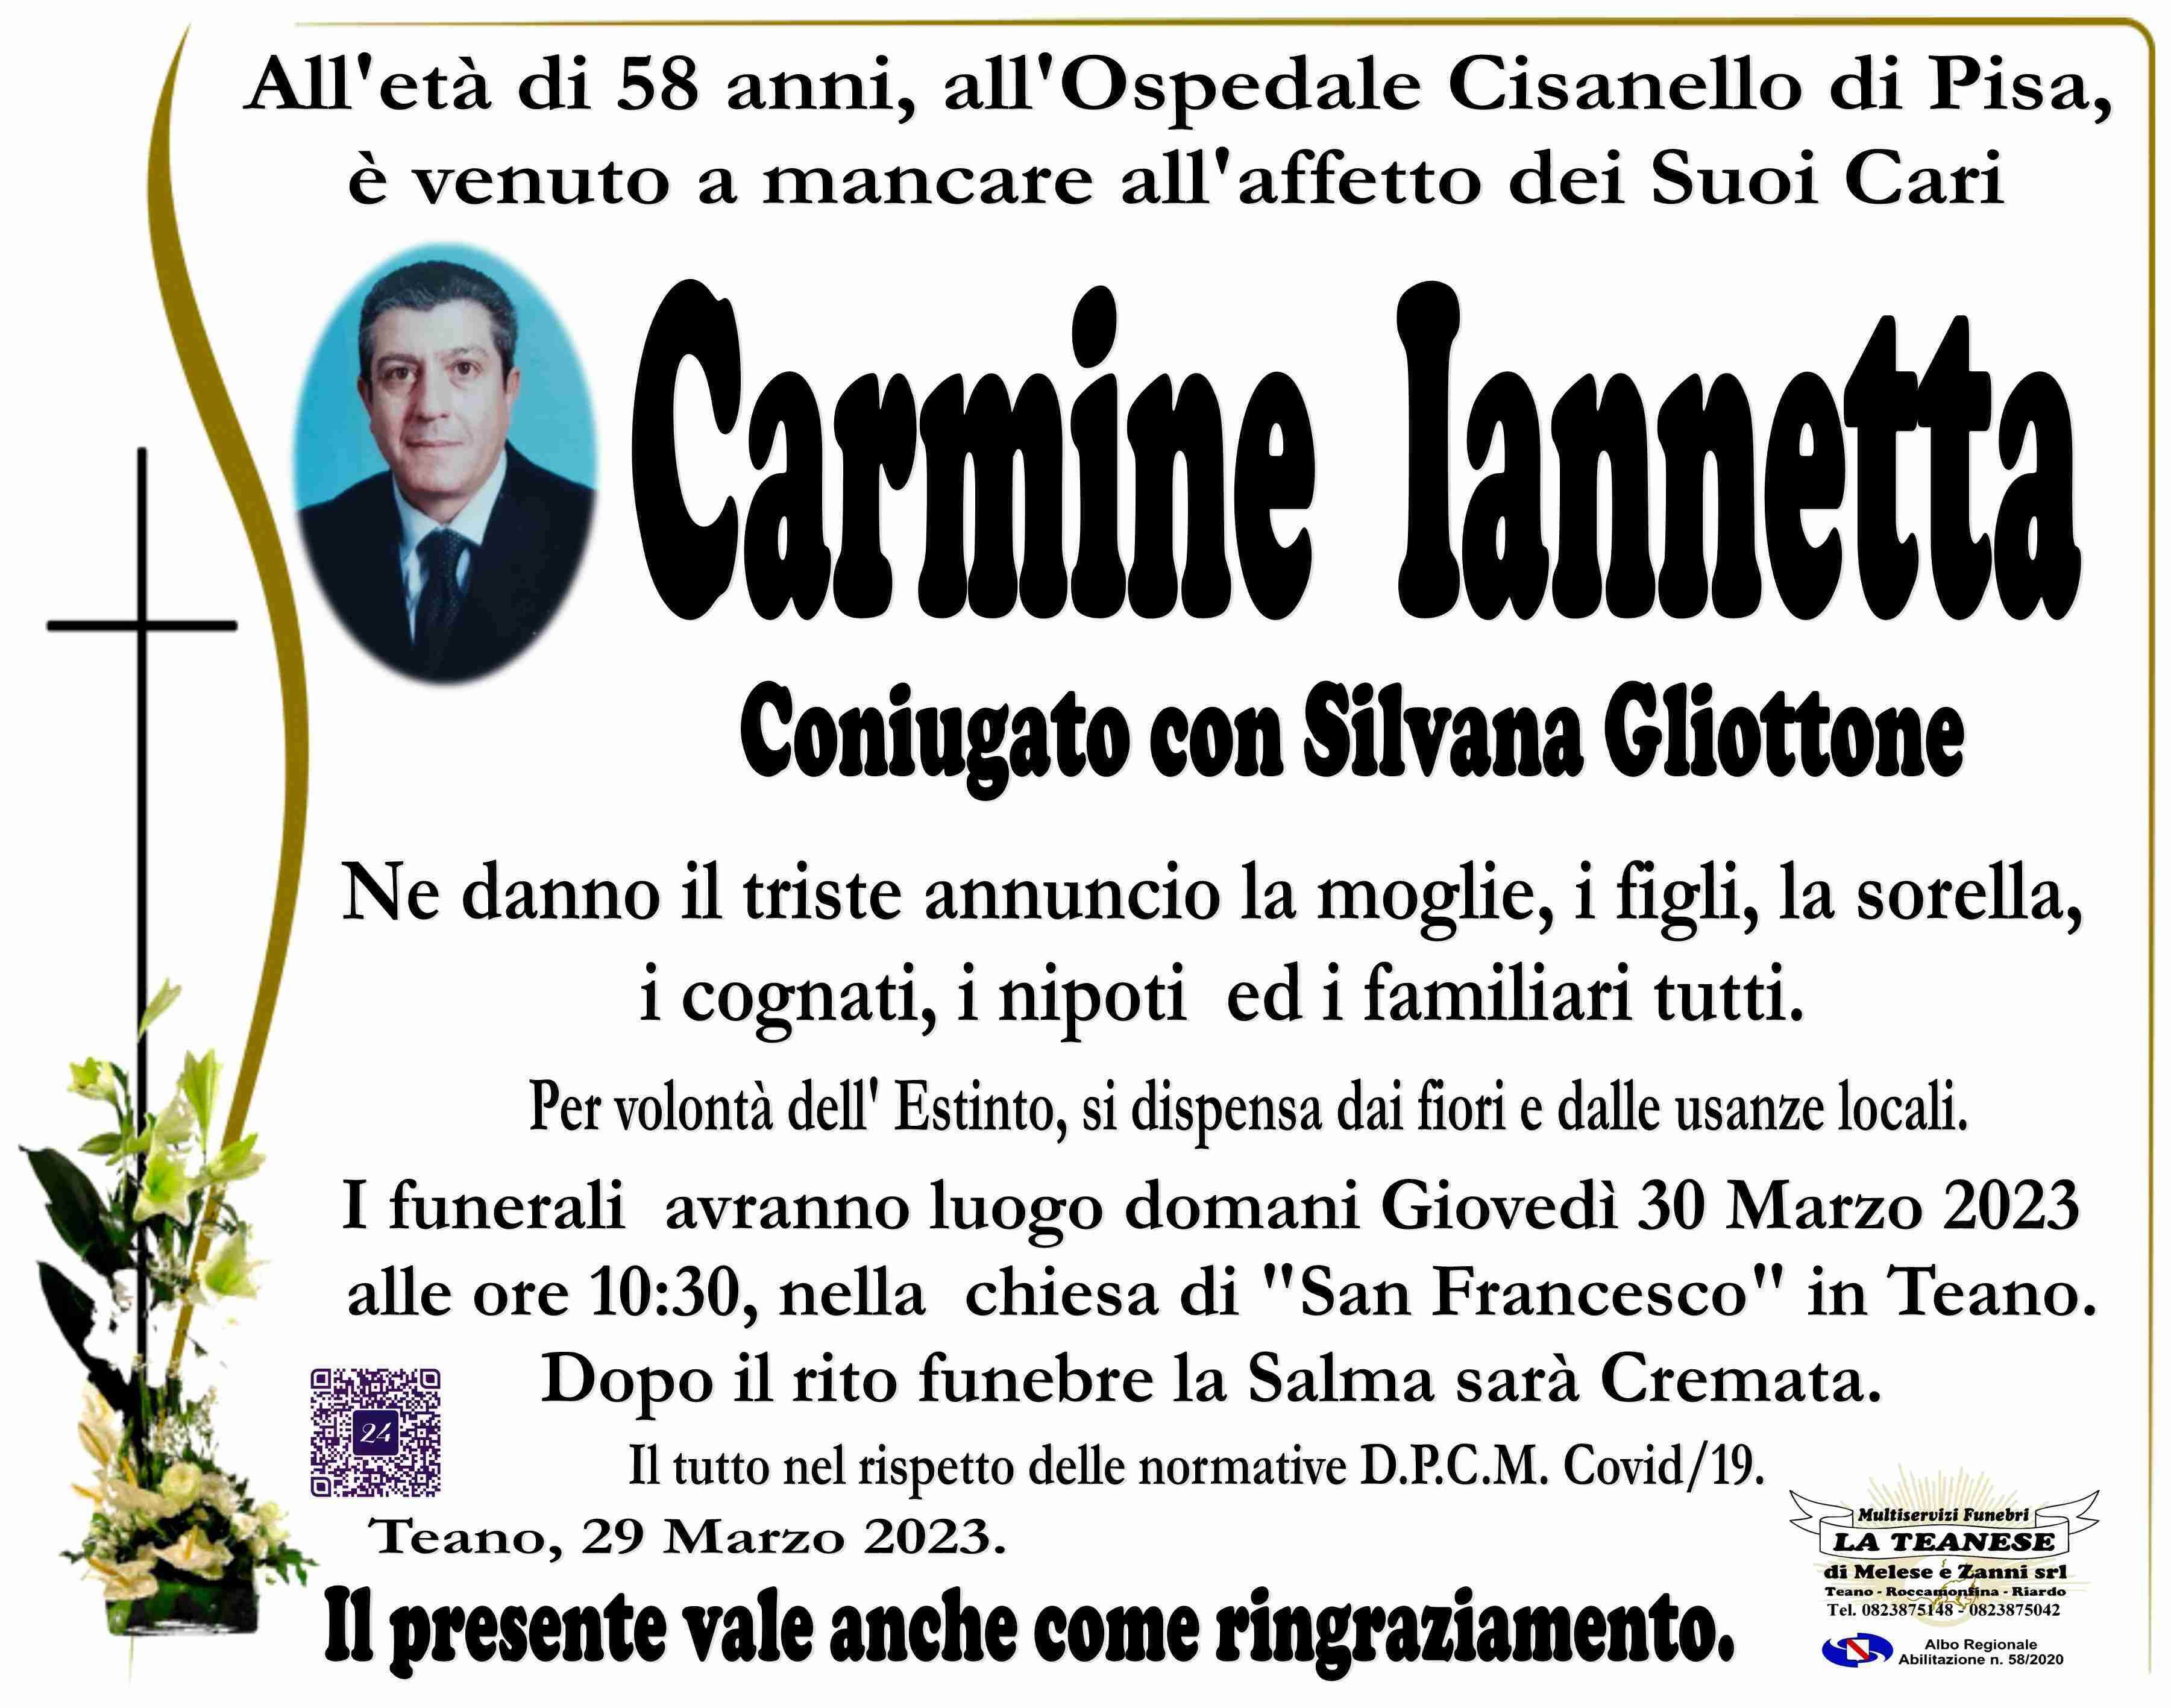 Carmine Iannetta